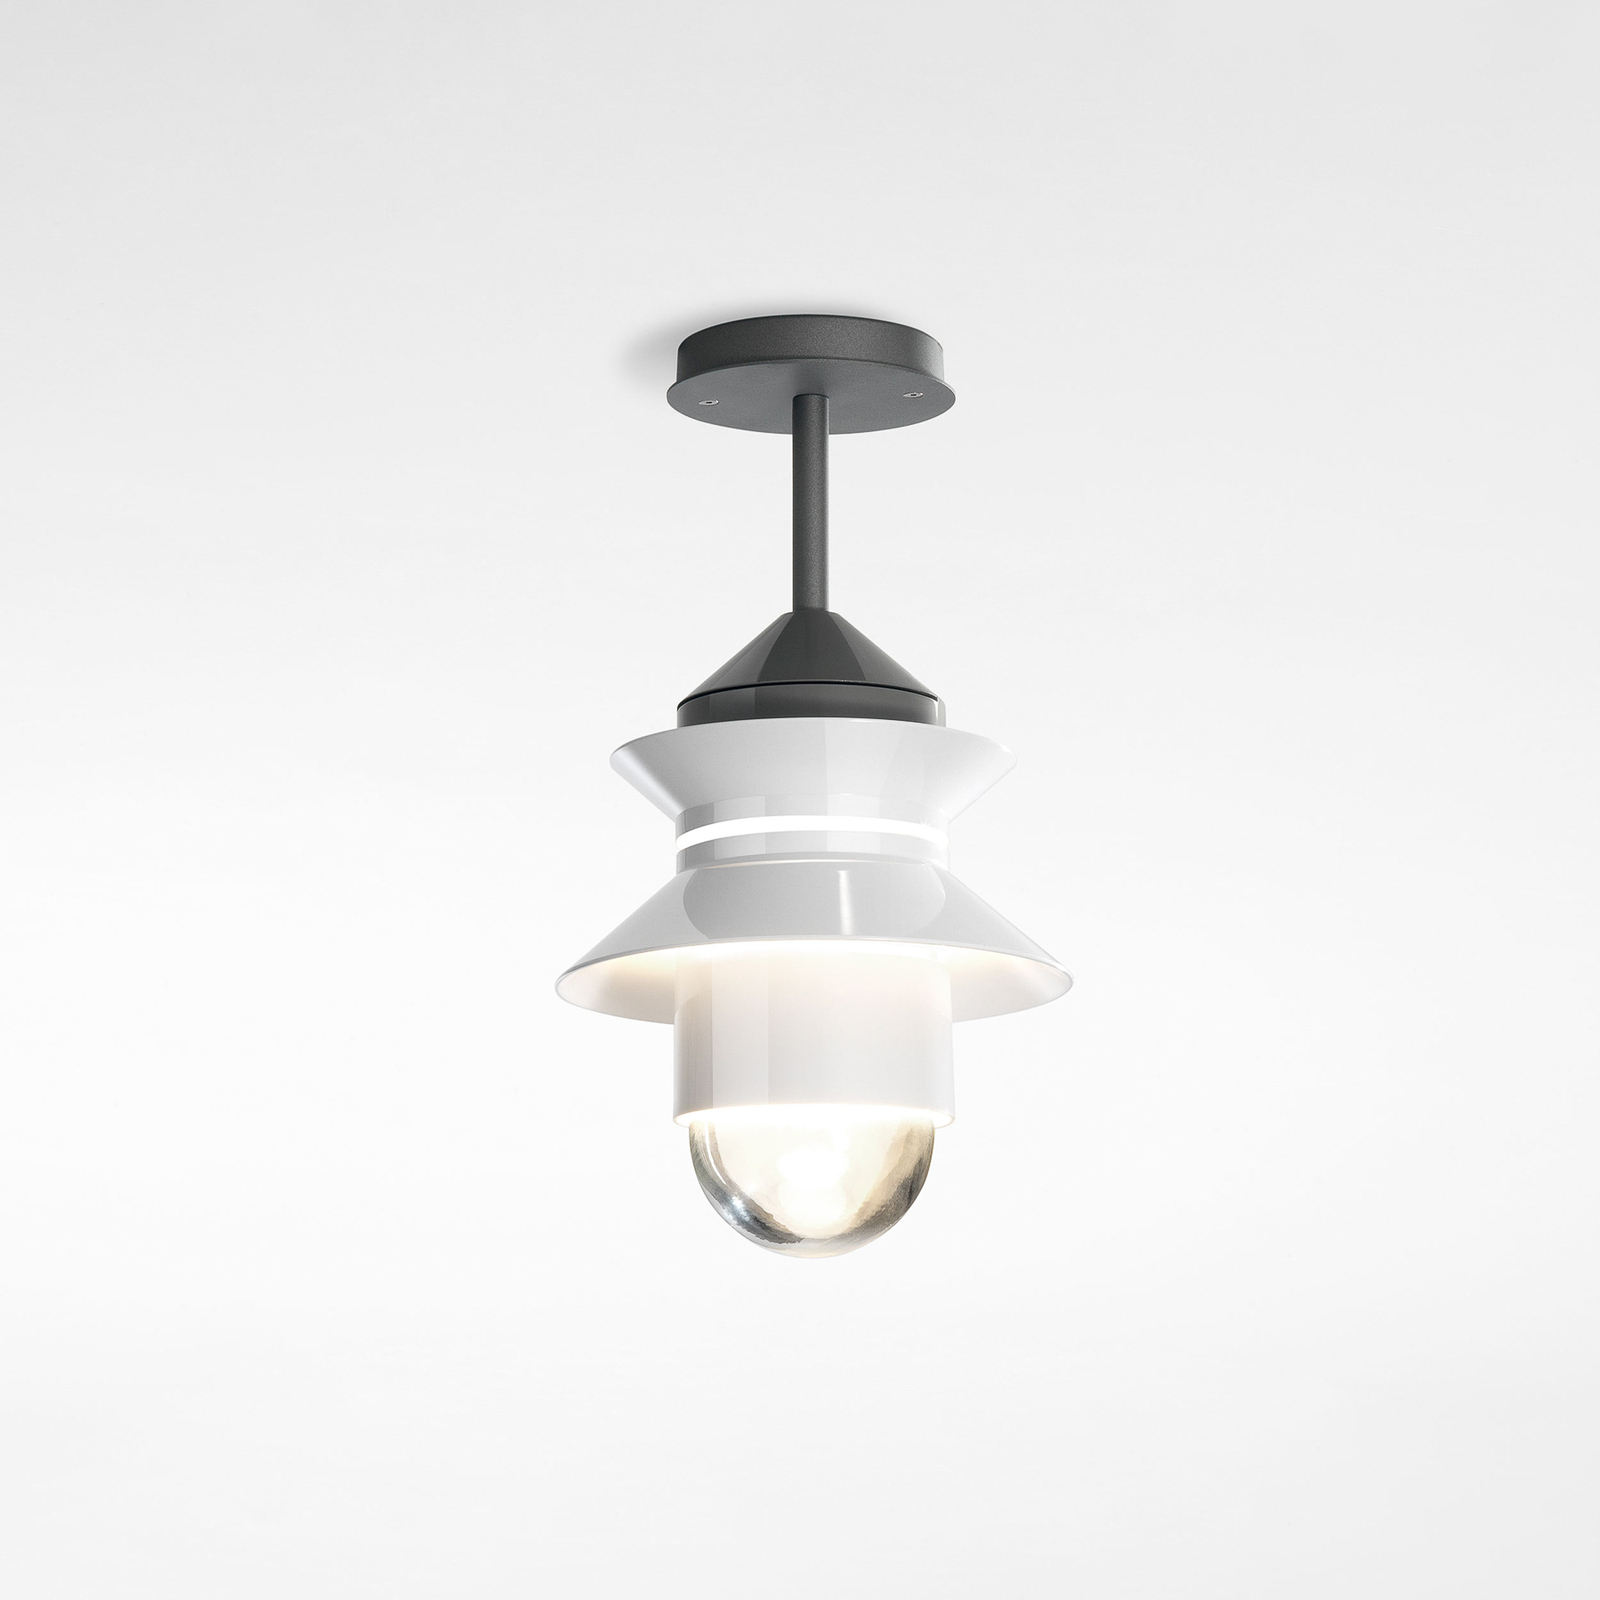 Lampa sufitowa zewnętrzna MARSET Santorini, IP65, biała